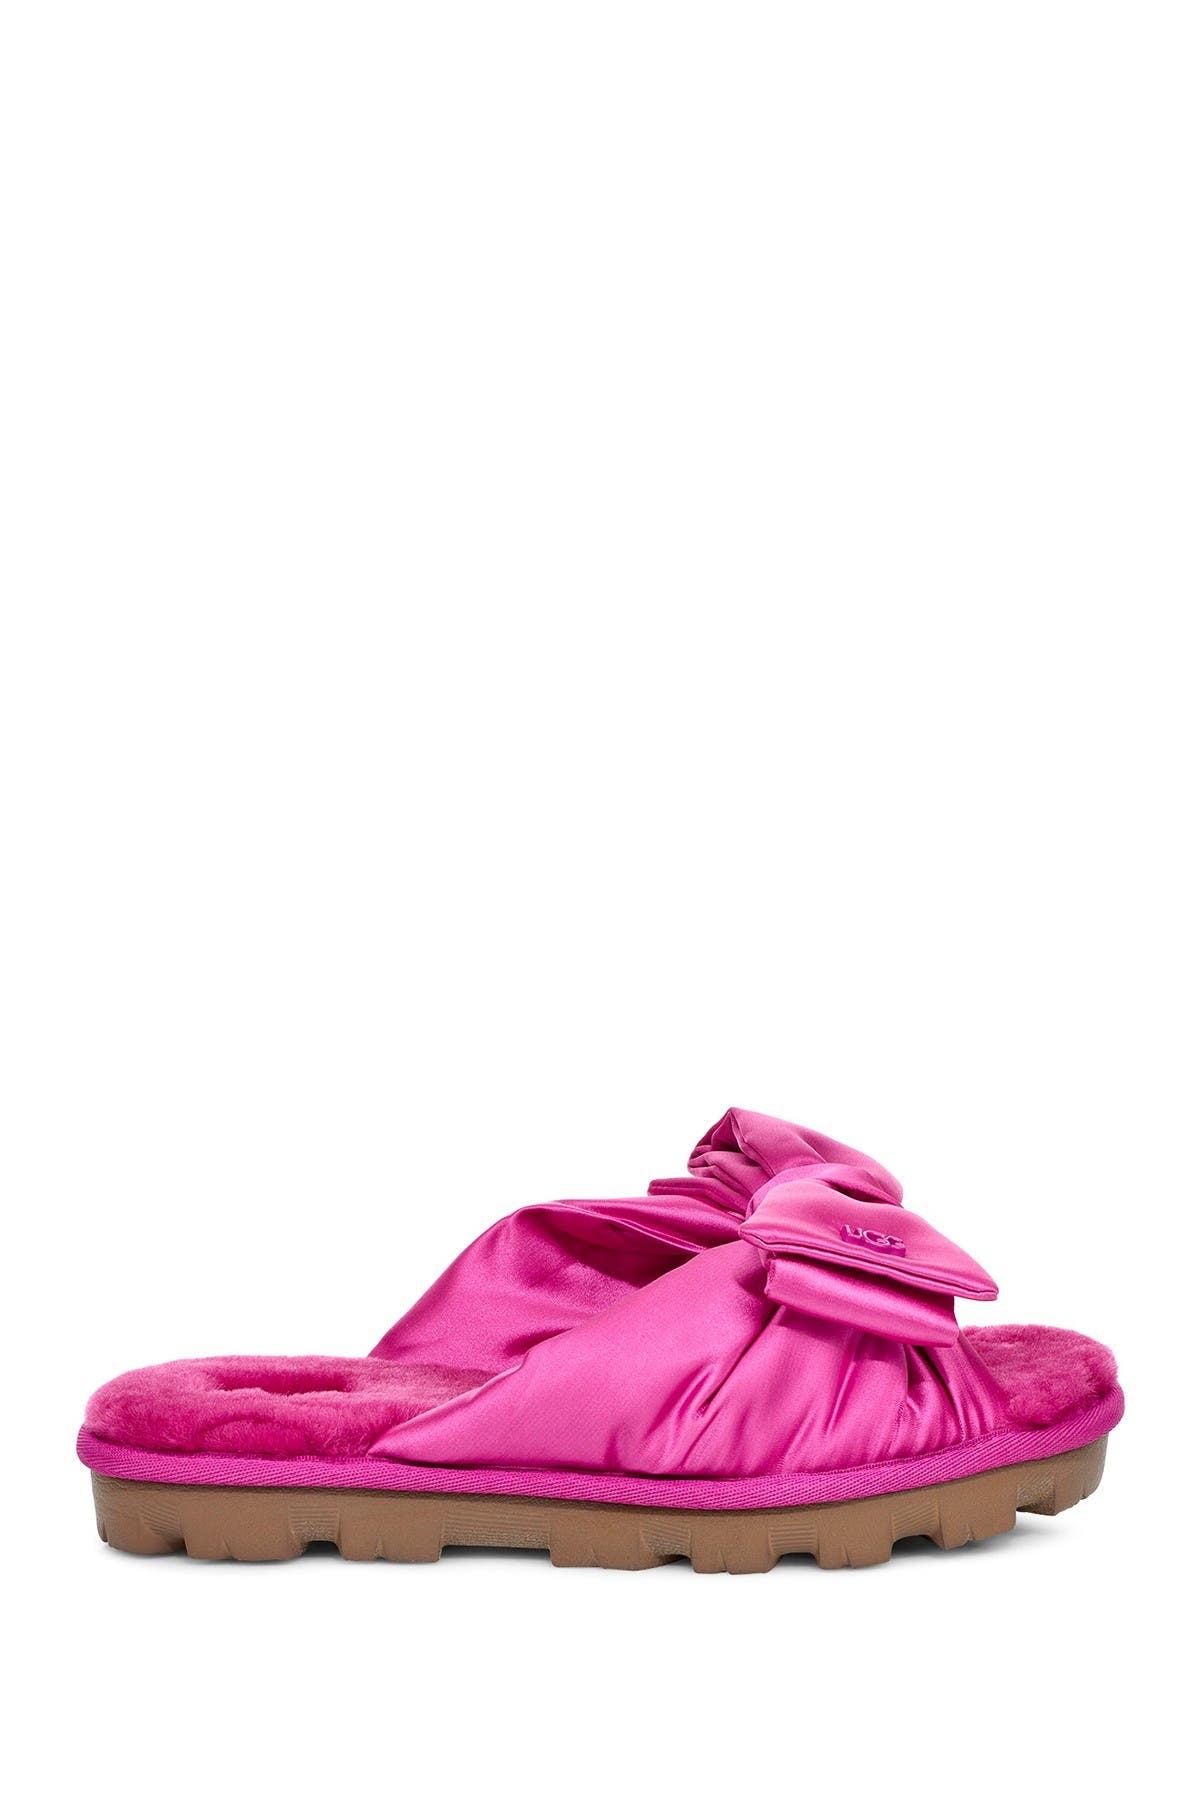 ugg lushette slippers